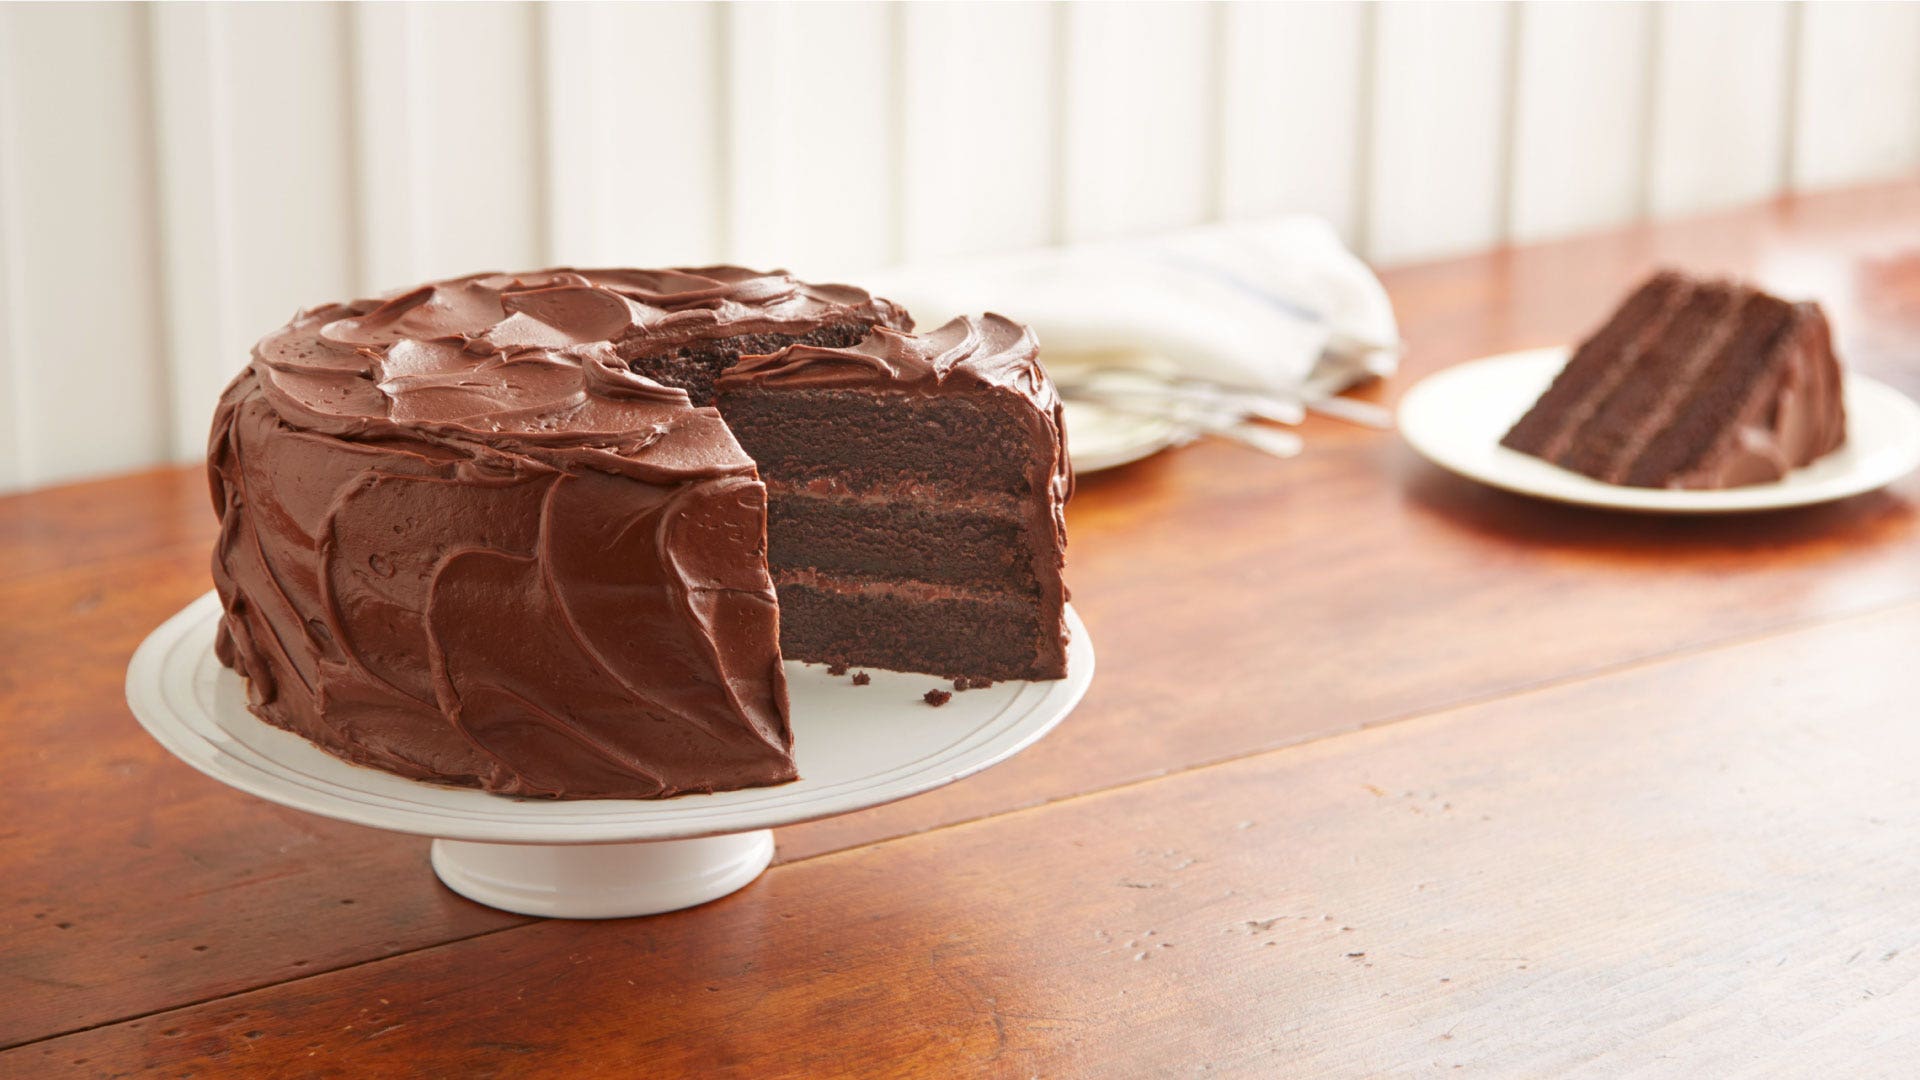 Gluten-free HERSHEY'S Perfectly Chocolate Chocolate Cake